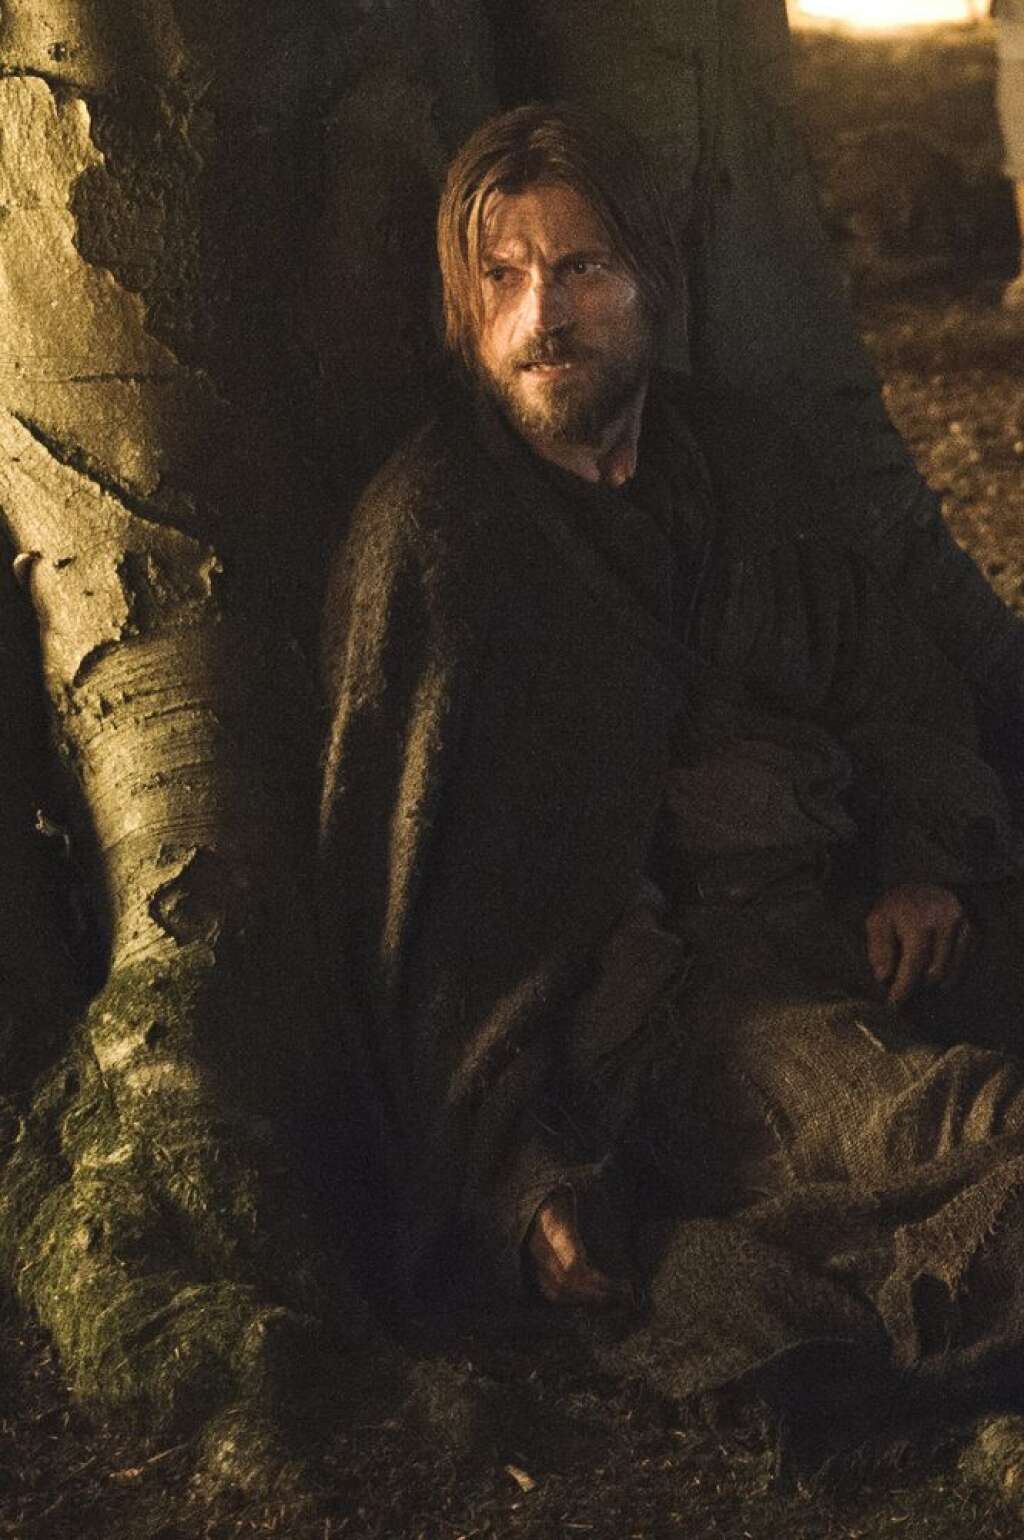 'Game Of Thrones' Season 3, Episode 3 - Nikolaj Coster-Waldau as Jaime Lannister